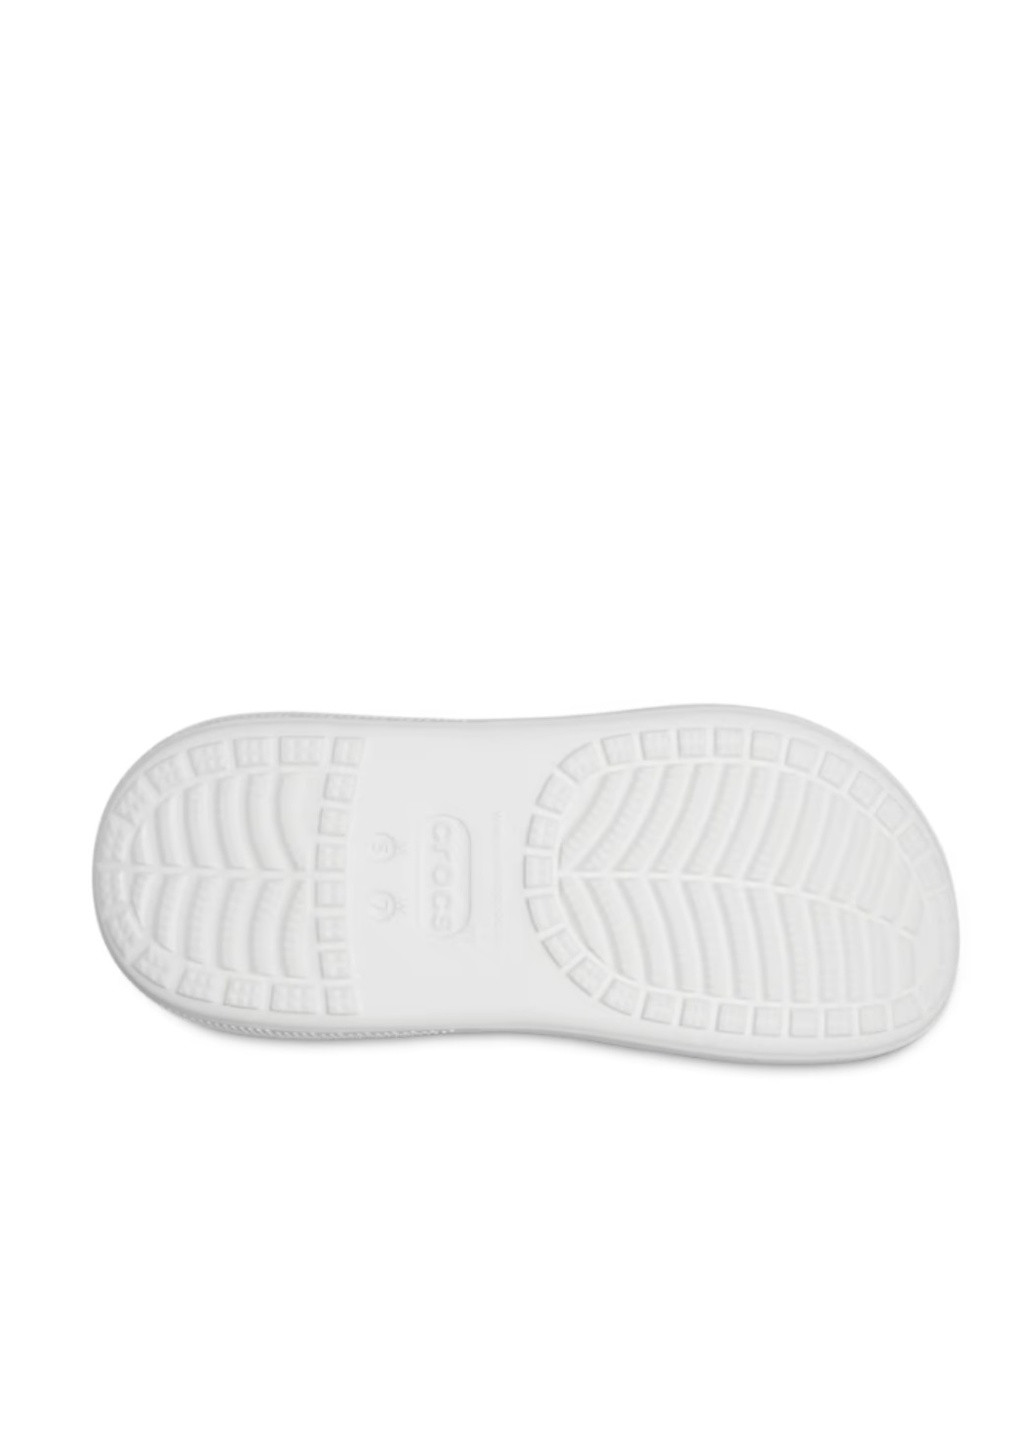 Белые сабо на высокой платформе Crocs на высоком каблуке